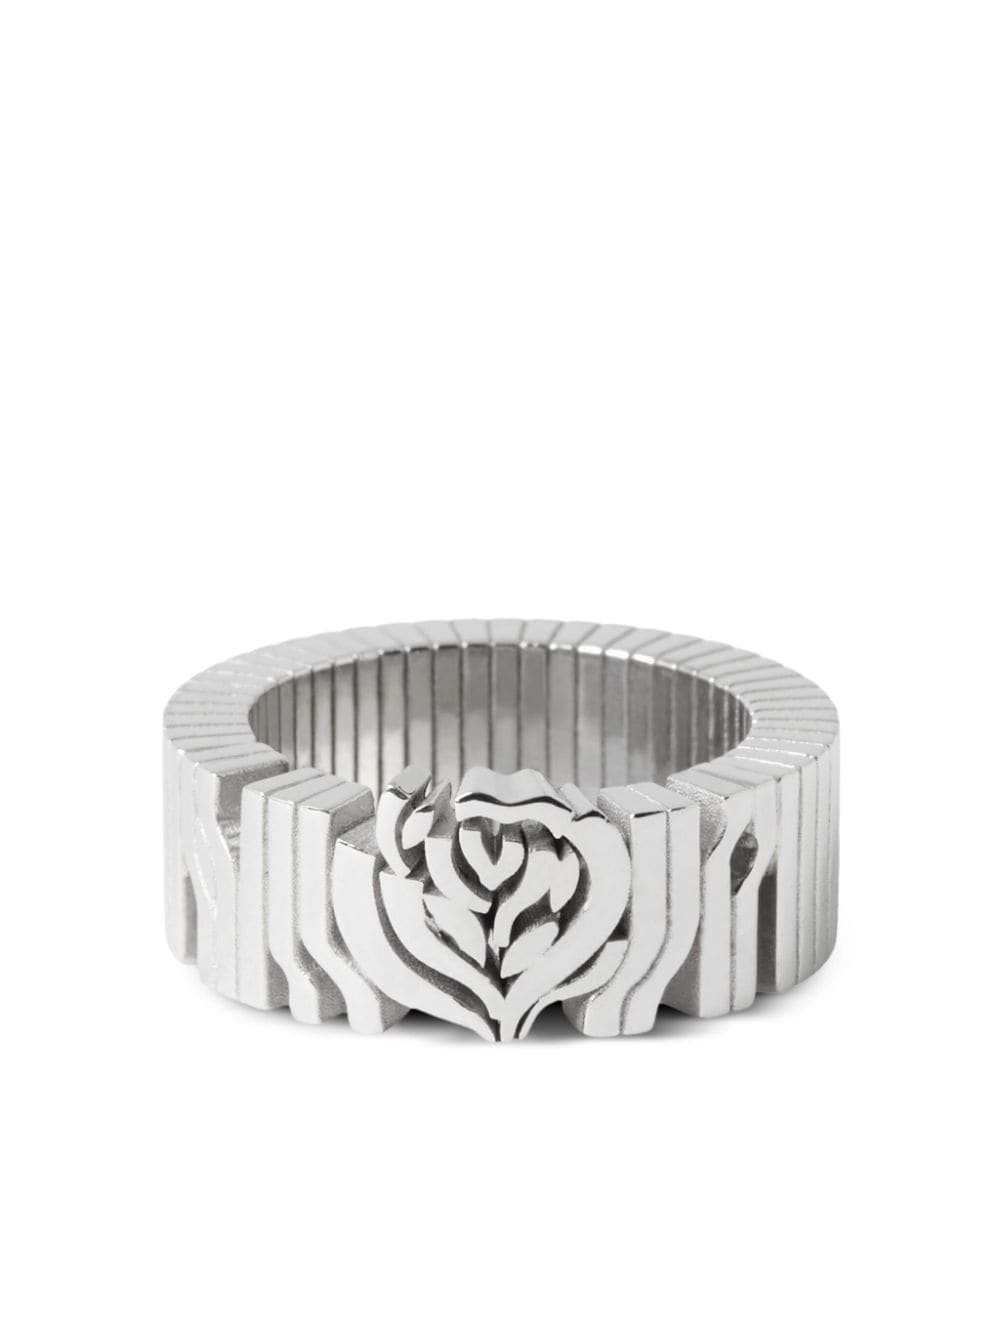 rose-motif engraved ring - 1